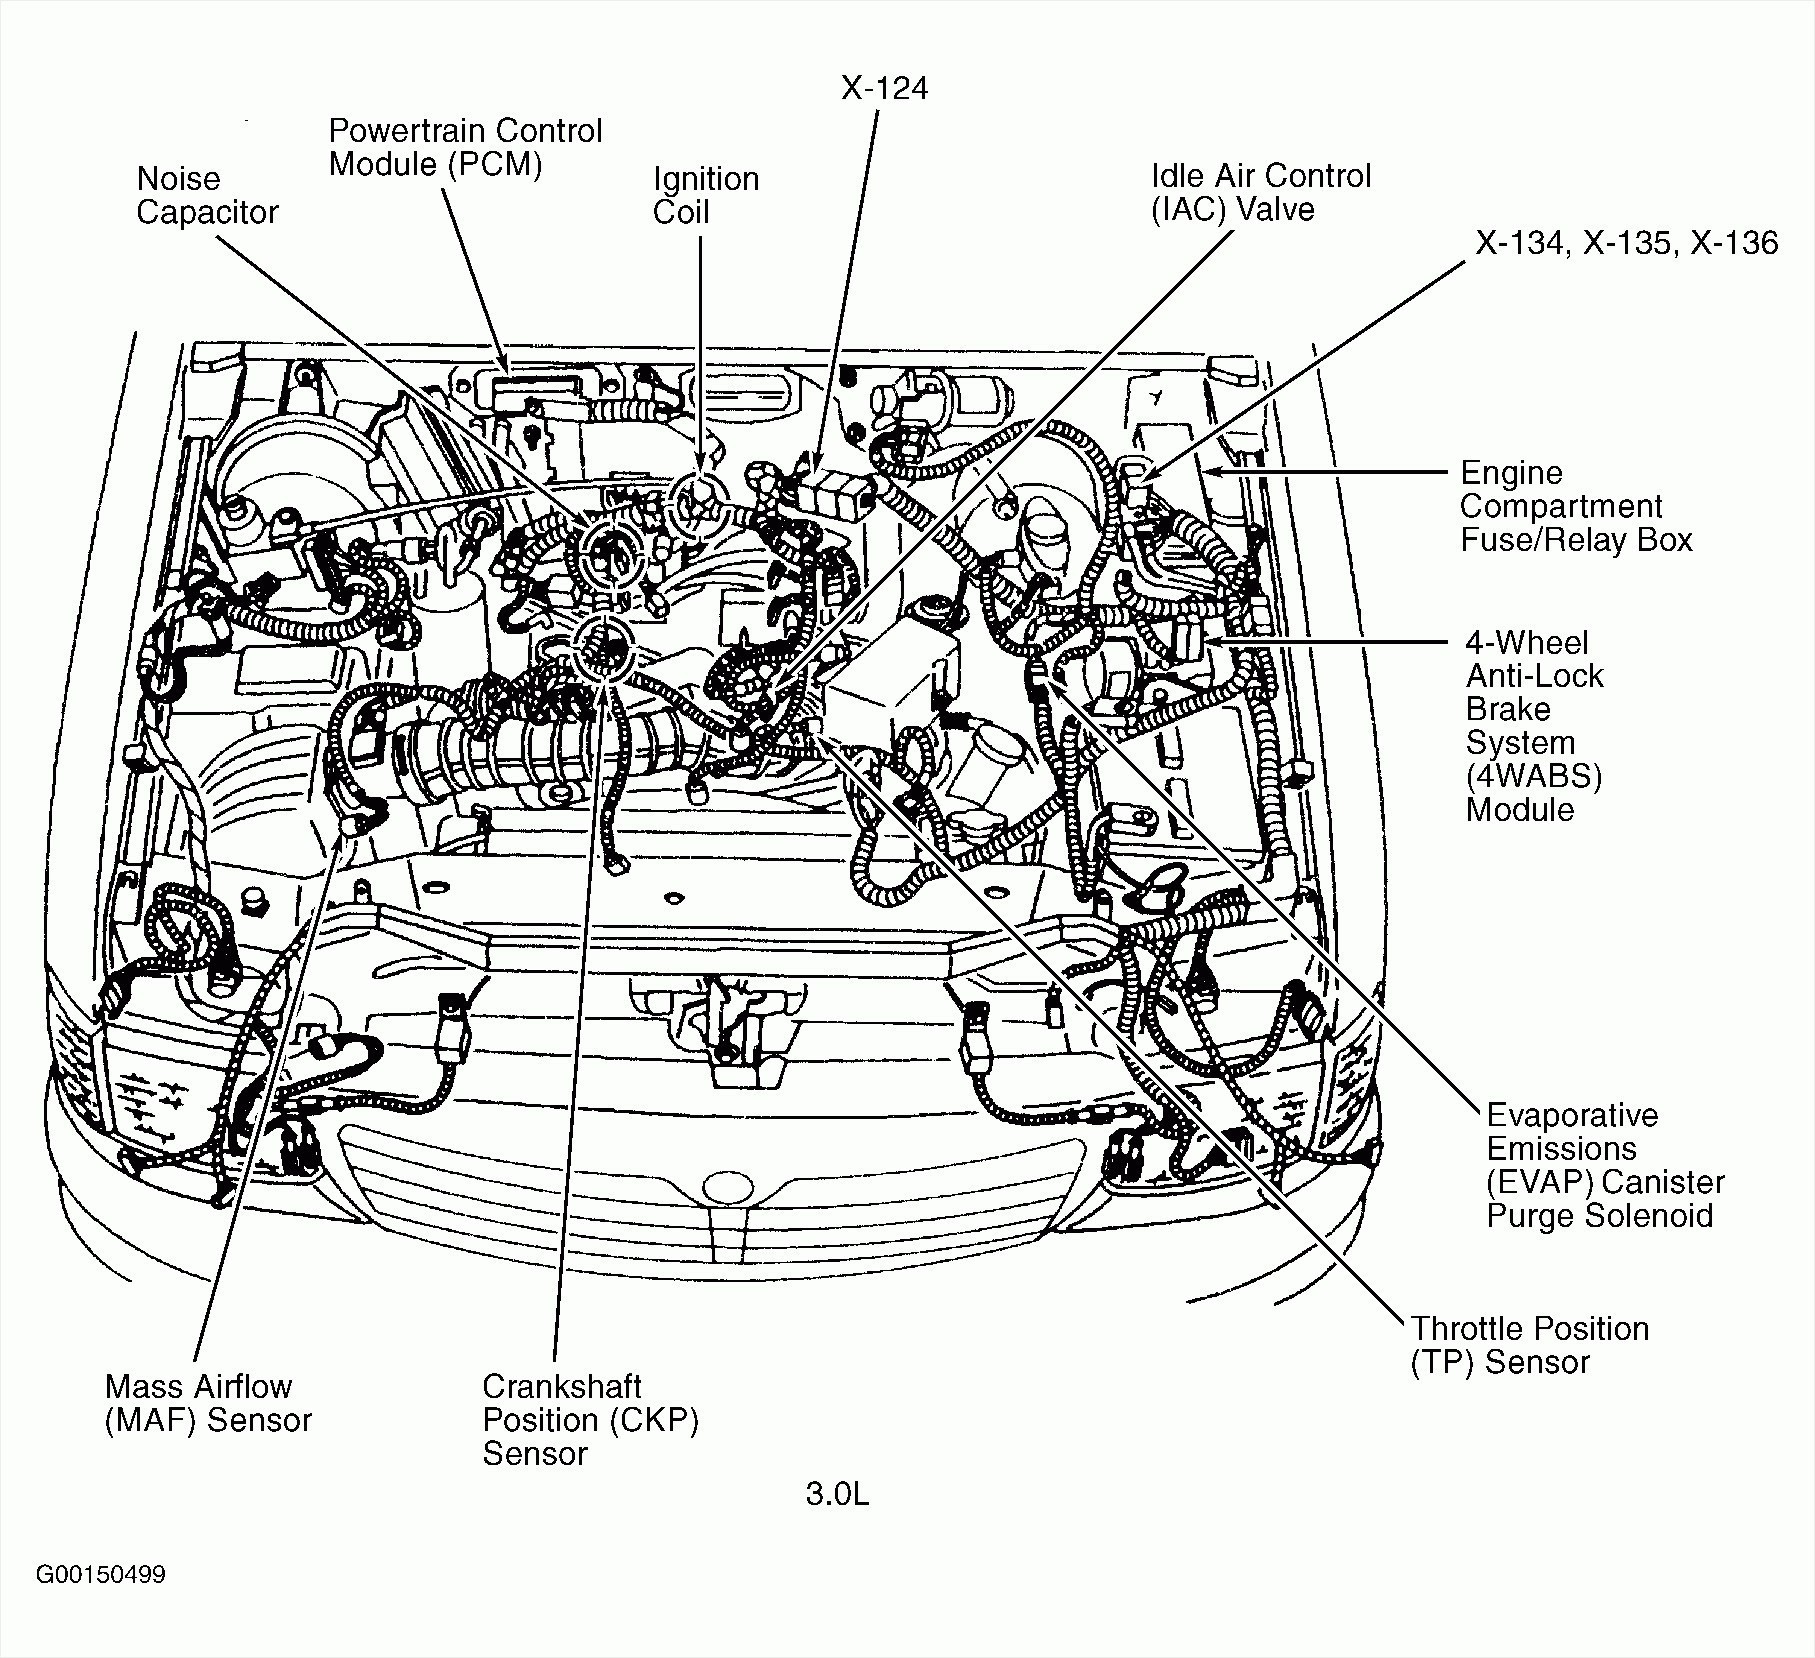 2002 Vw Beetle Engine Diagram Jetta Hood Wiring Diagram Wiring Diagram Paper Of 2002 Vw Beetle Engine Diagram